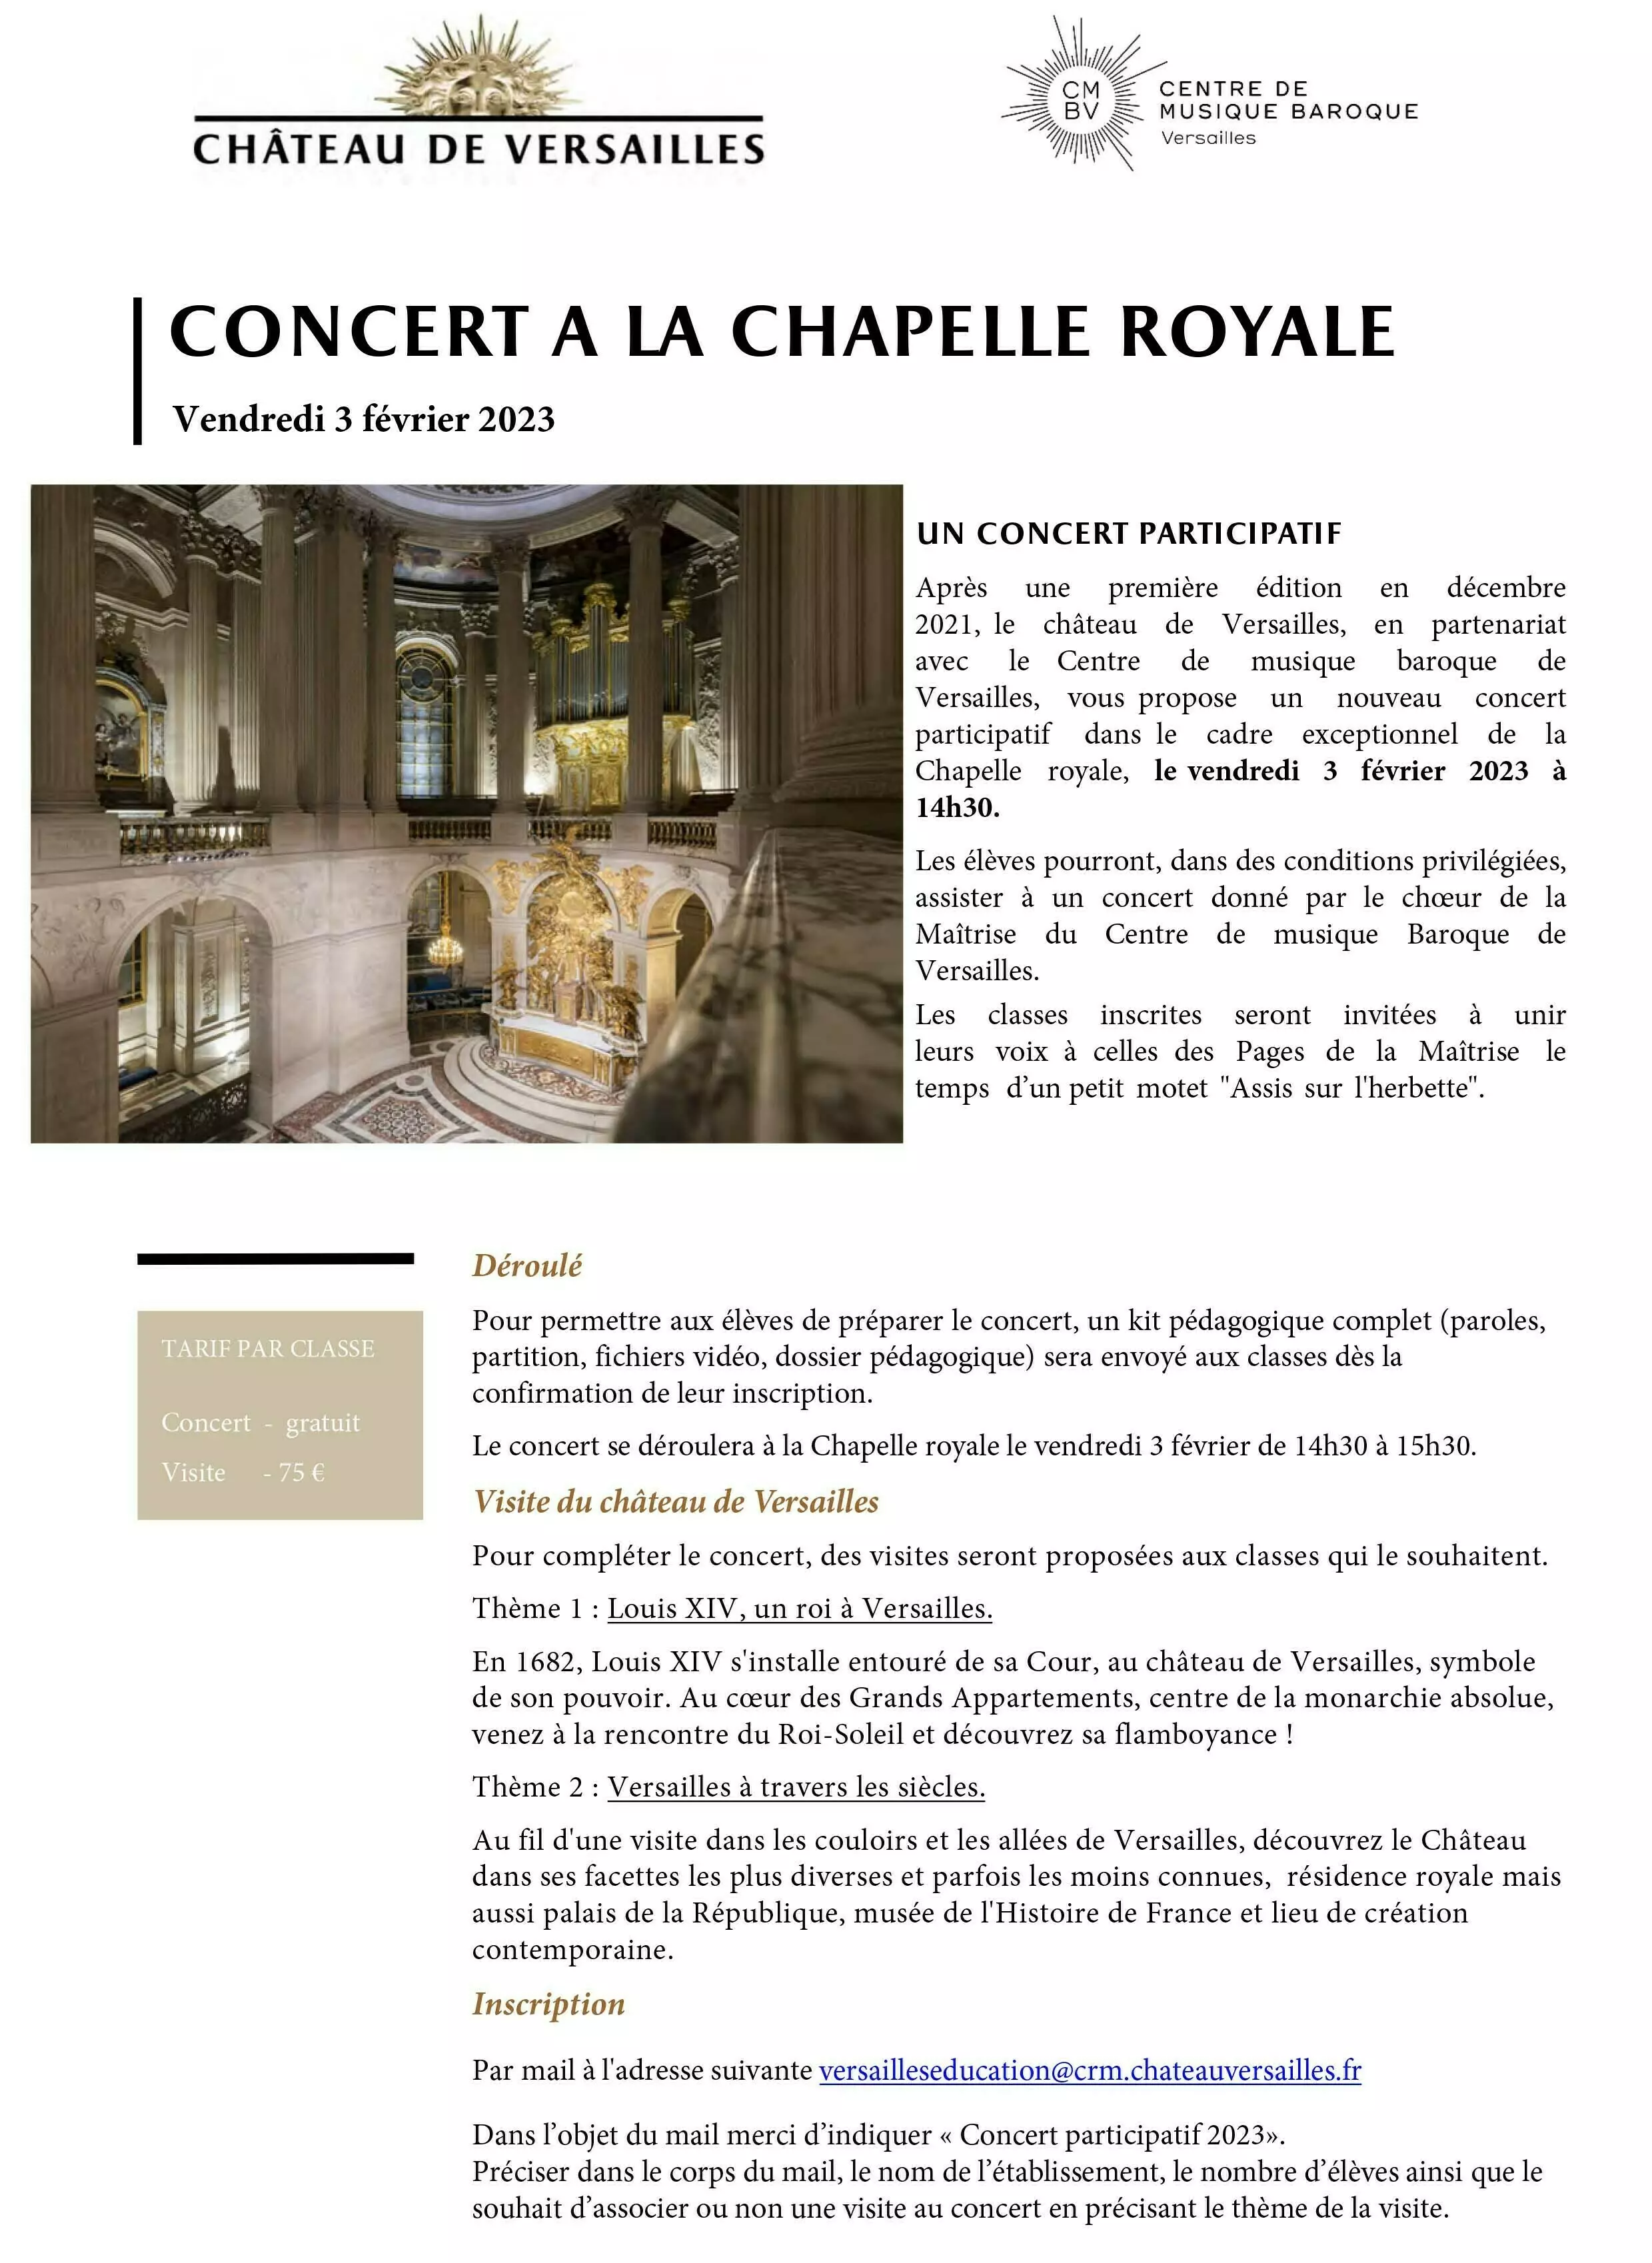 Concerts-Crédits : Château de Versailles